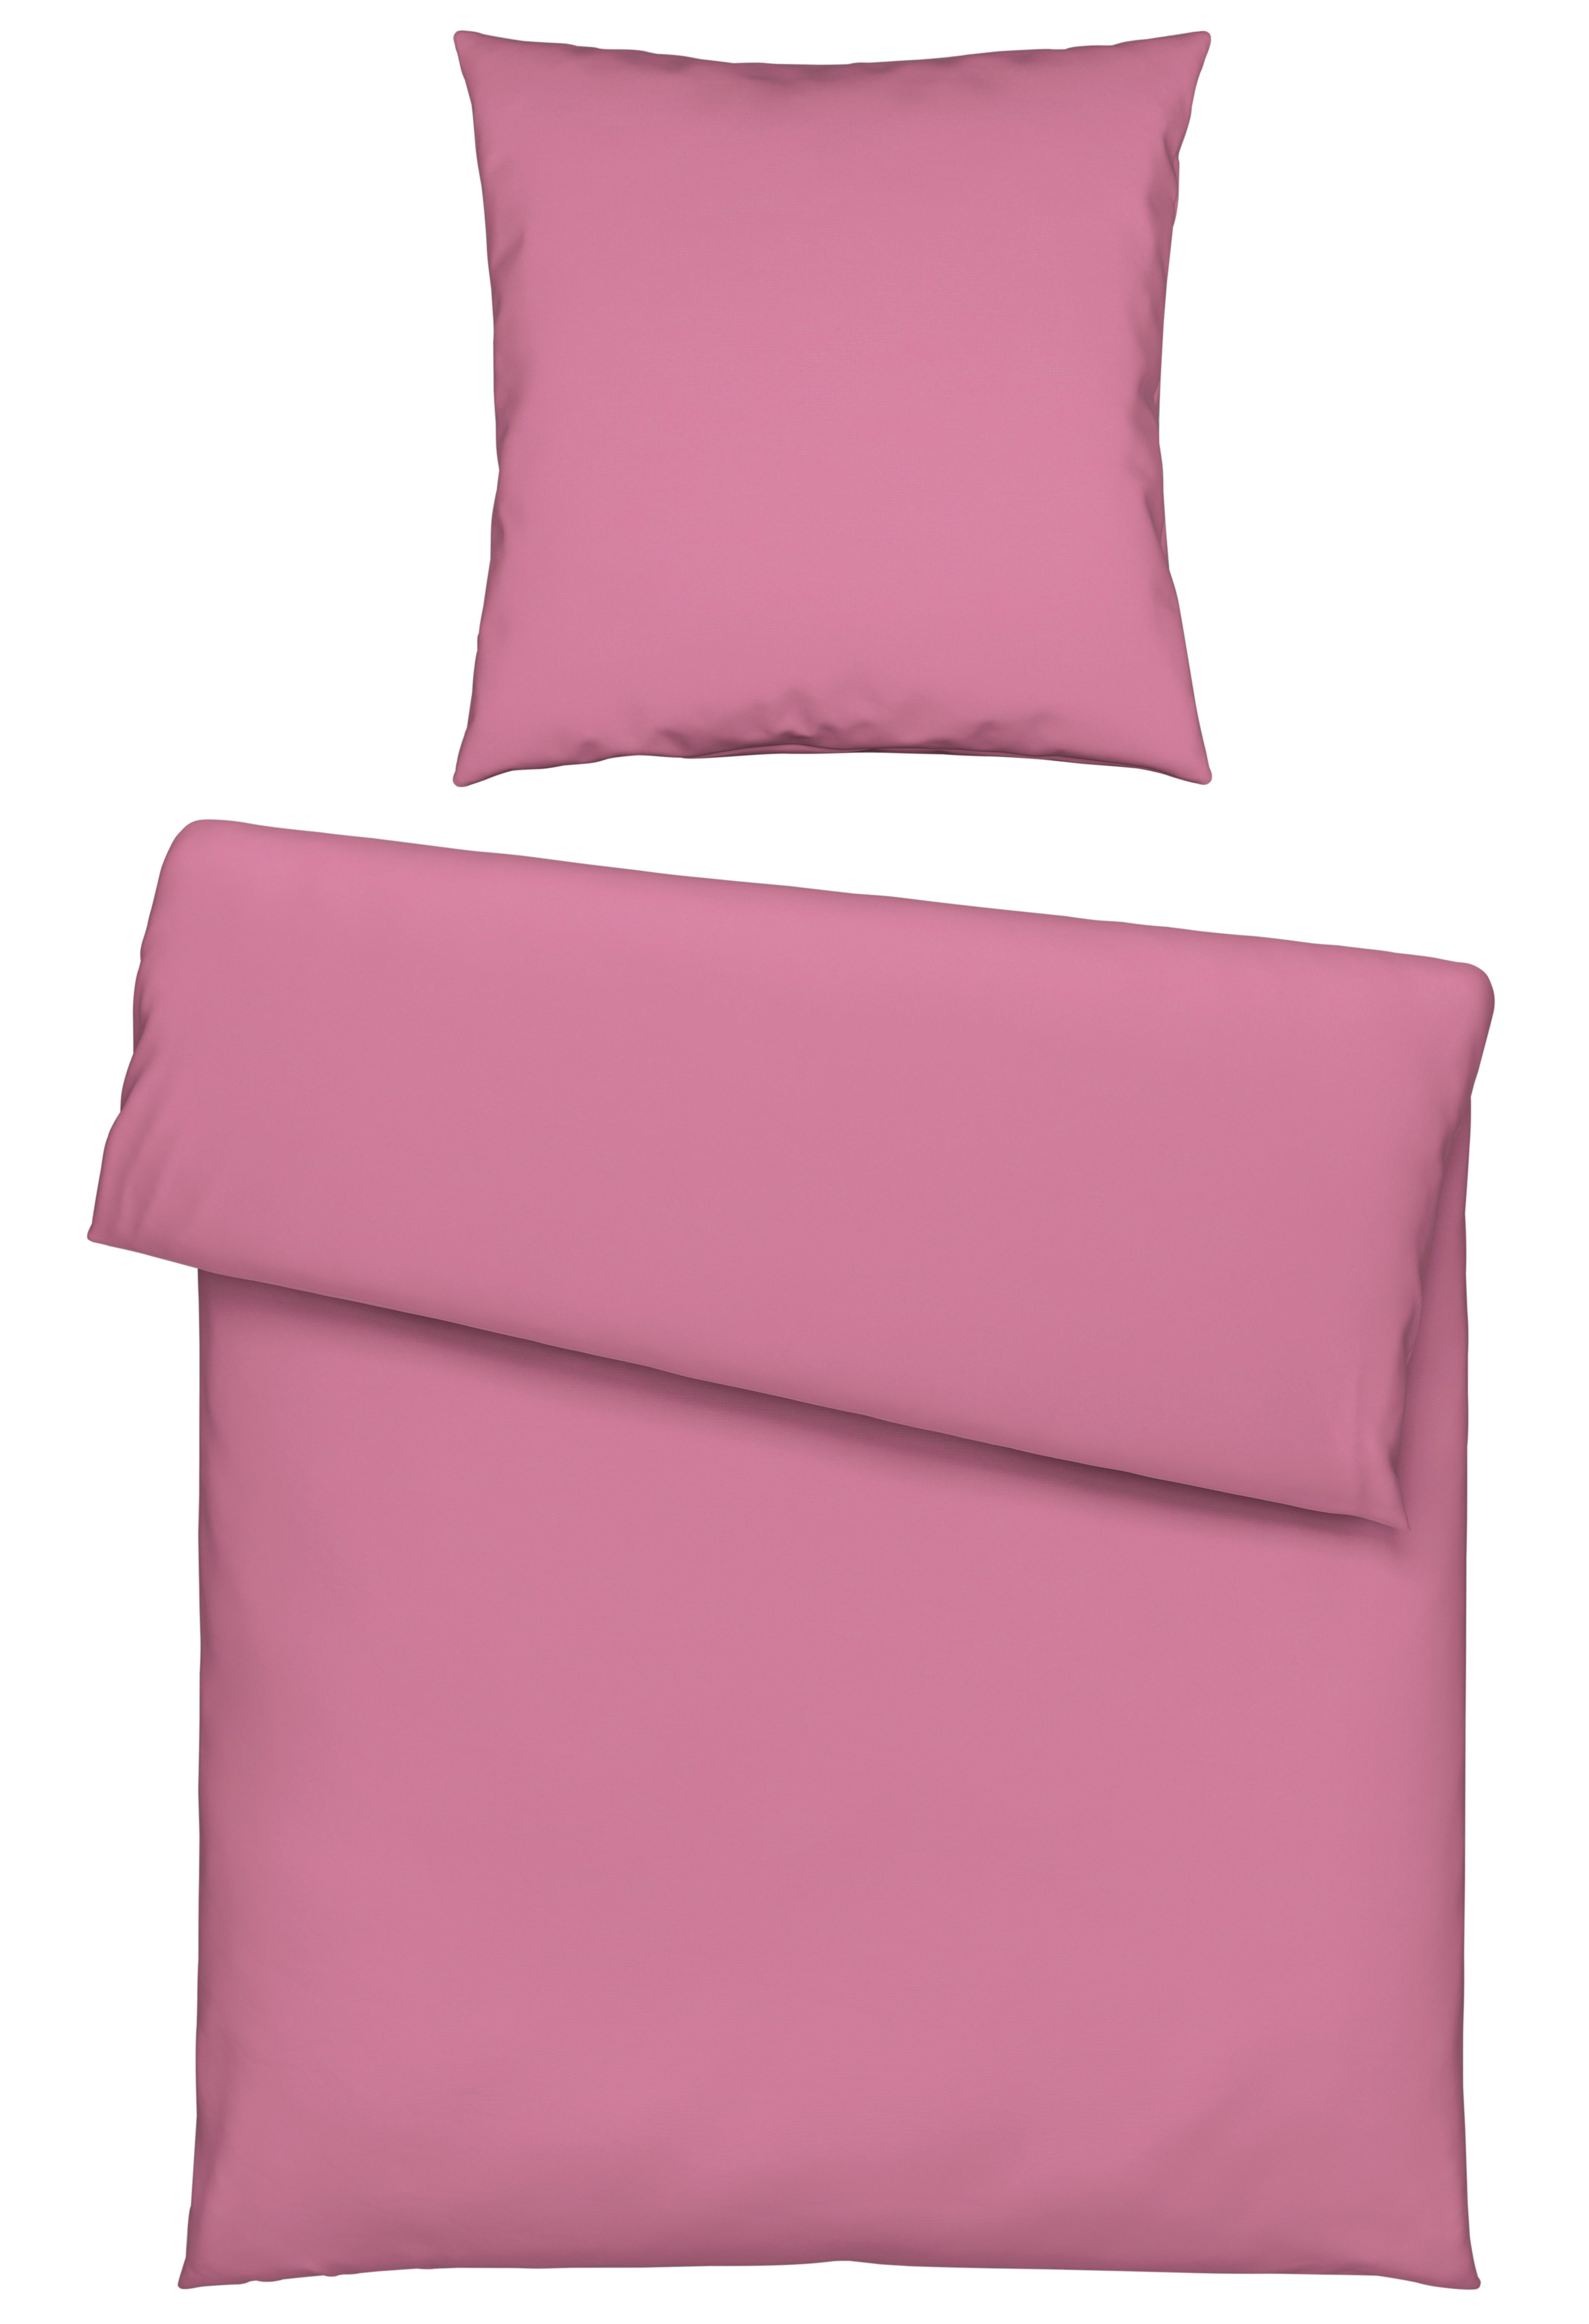 POSTELJINA 135/200 cm  - pink, Konvencionalno, tekstil (135/200cm) - Novel